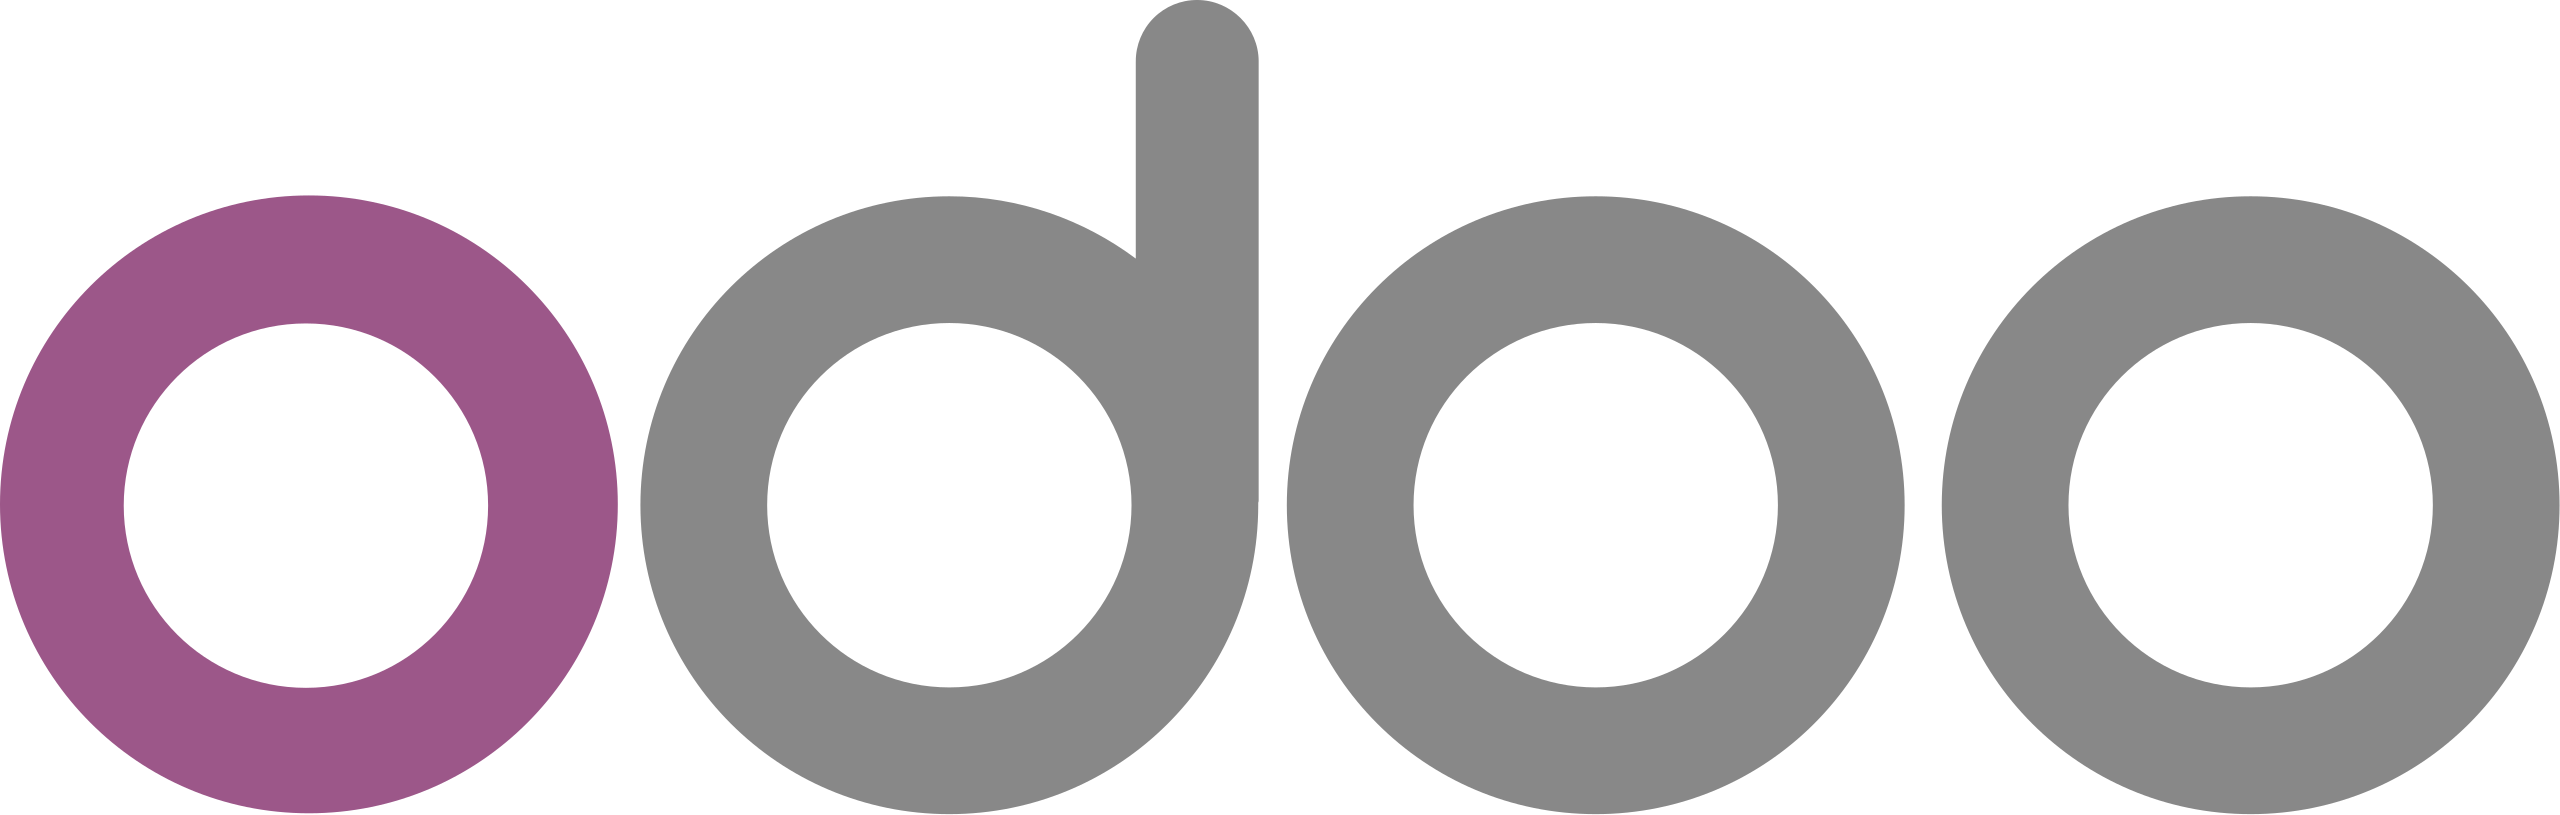 odoo logo